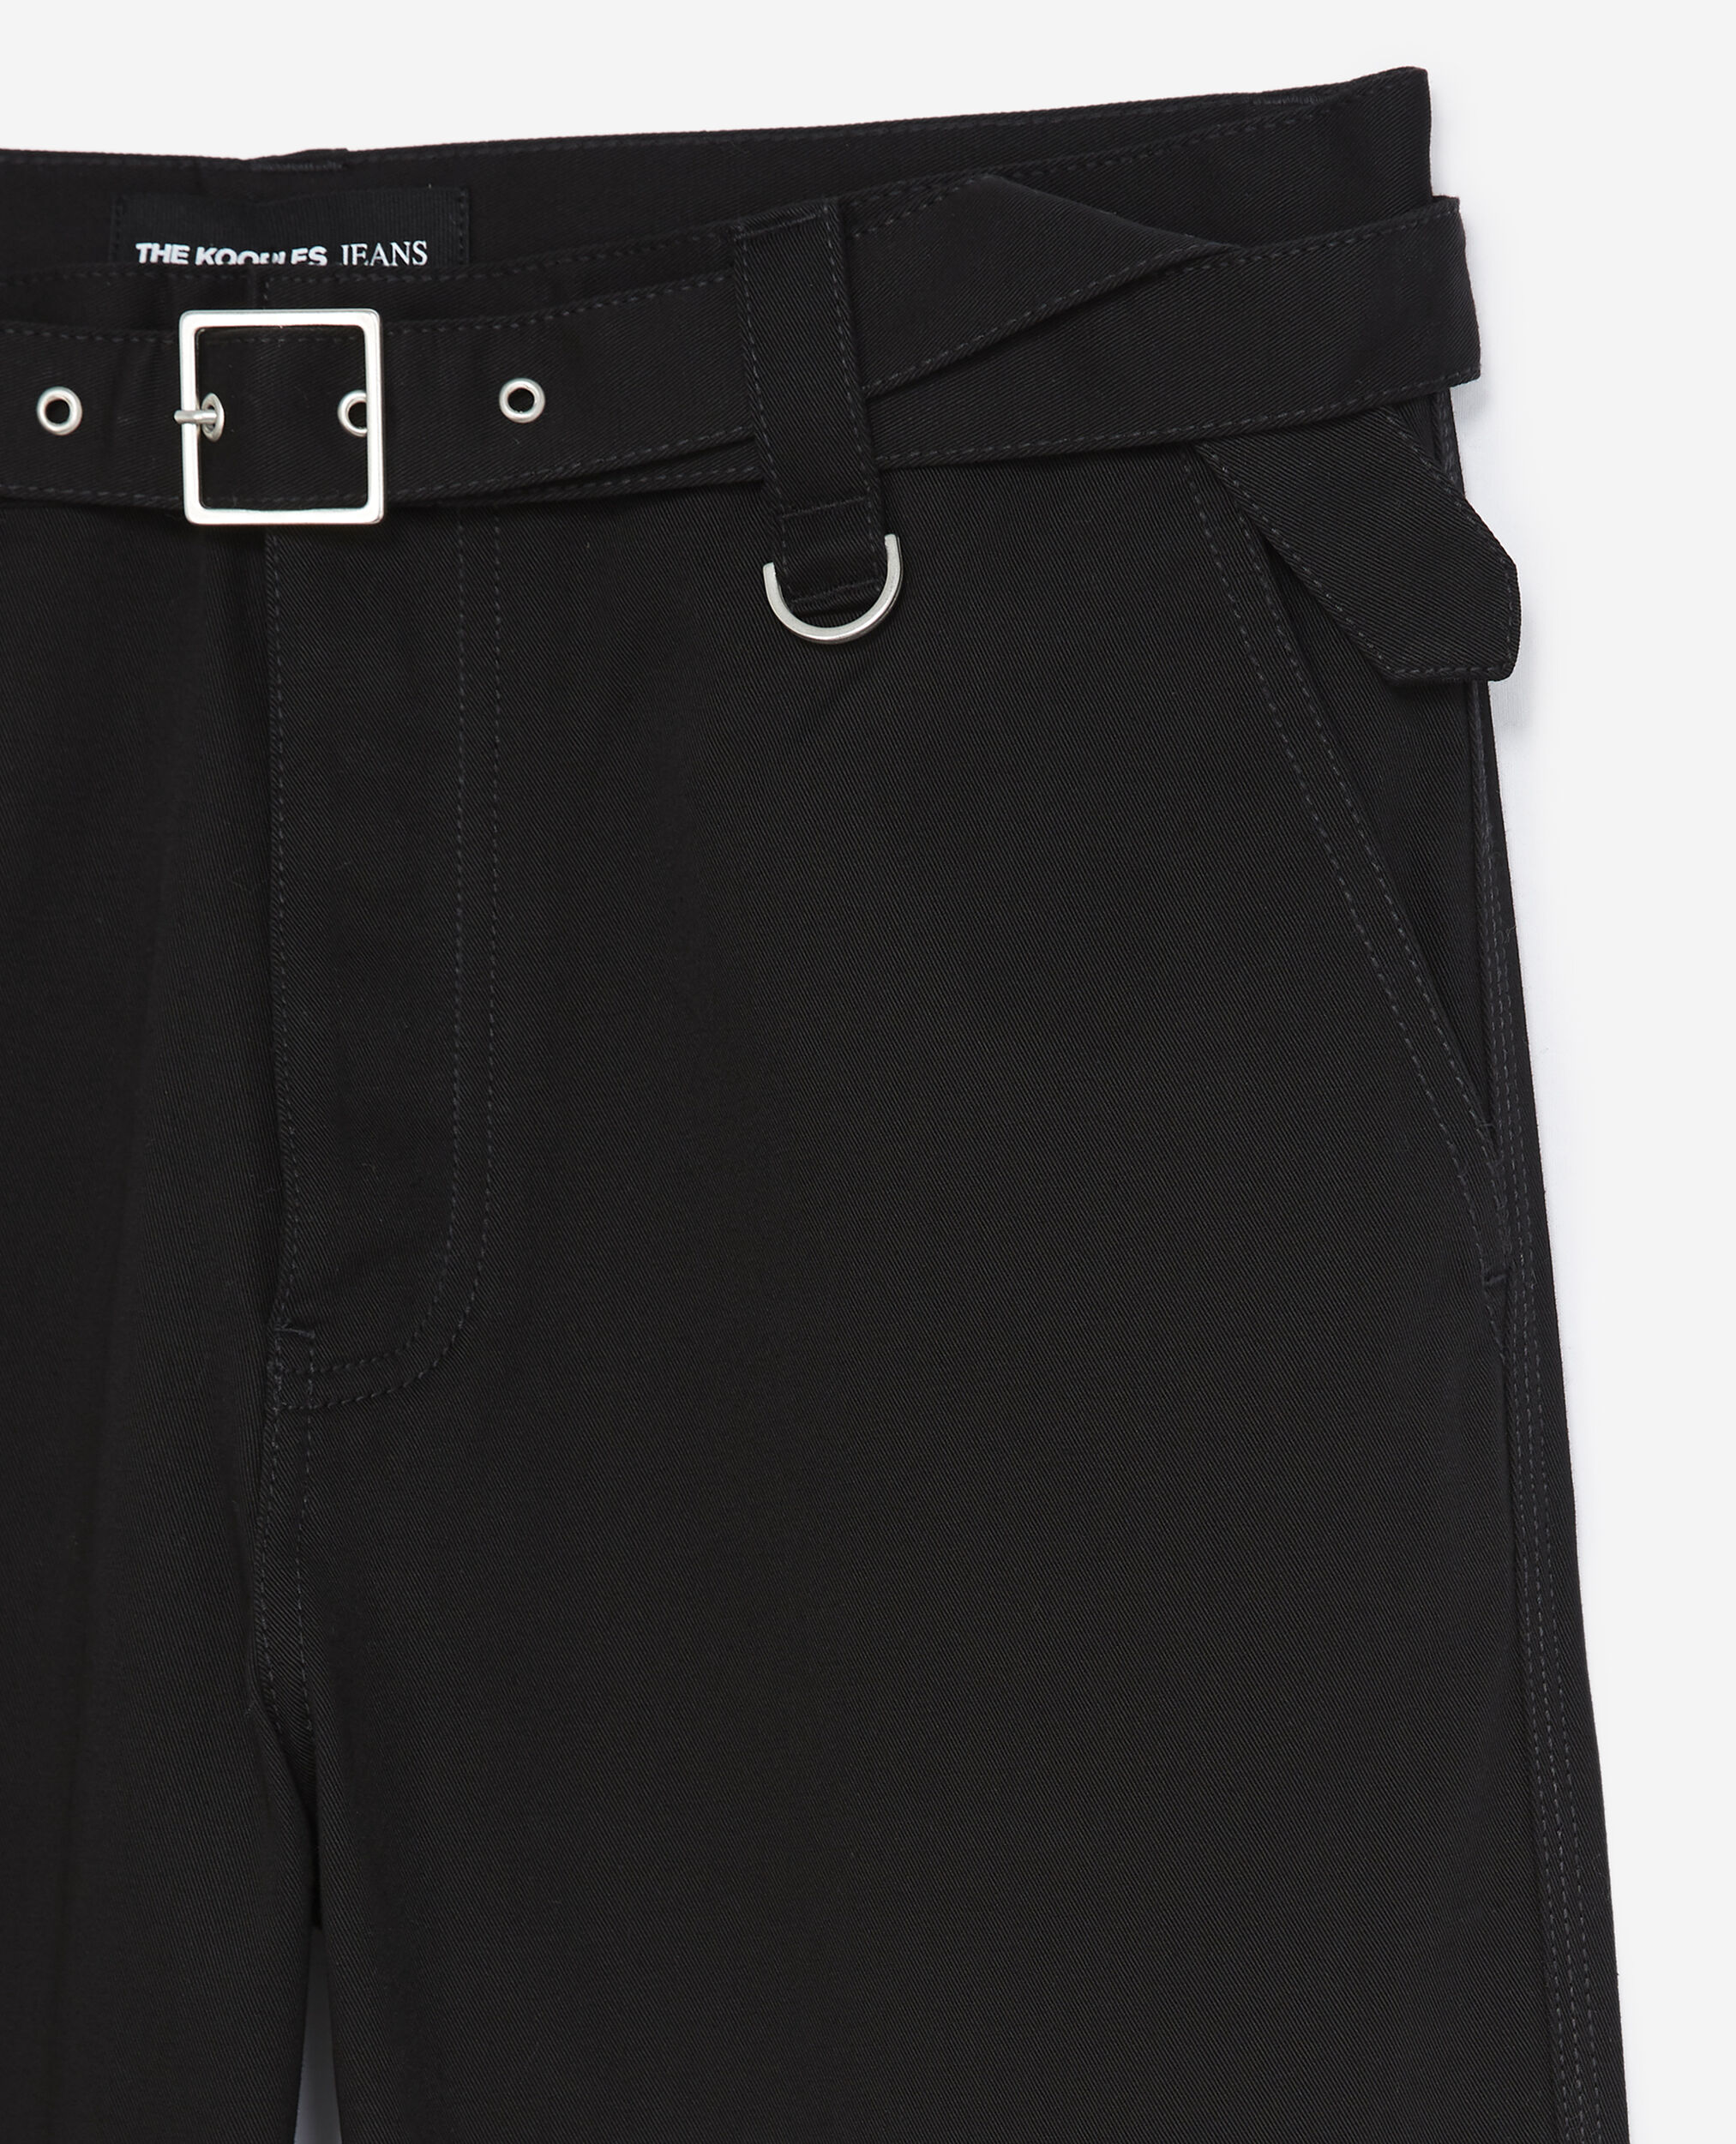 Pantalon droit noir à ceinture intégrée, BLACK, hi-res image number null